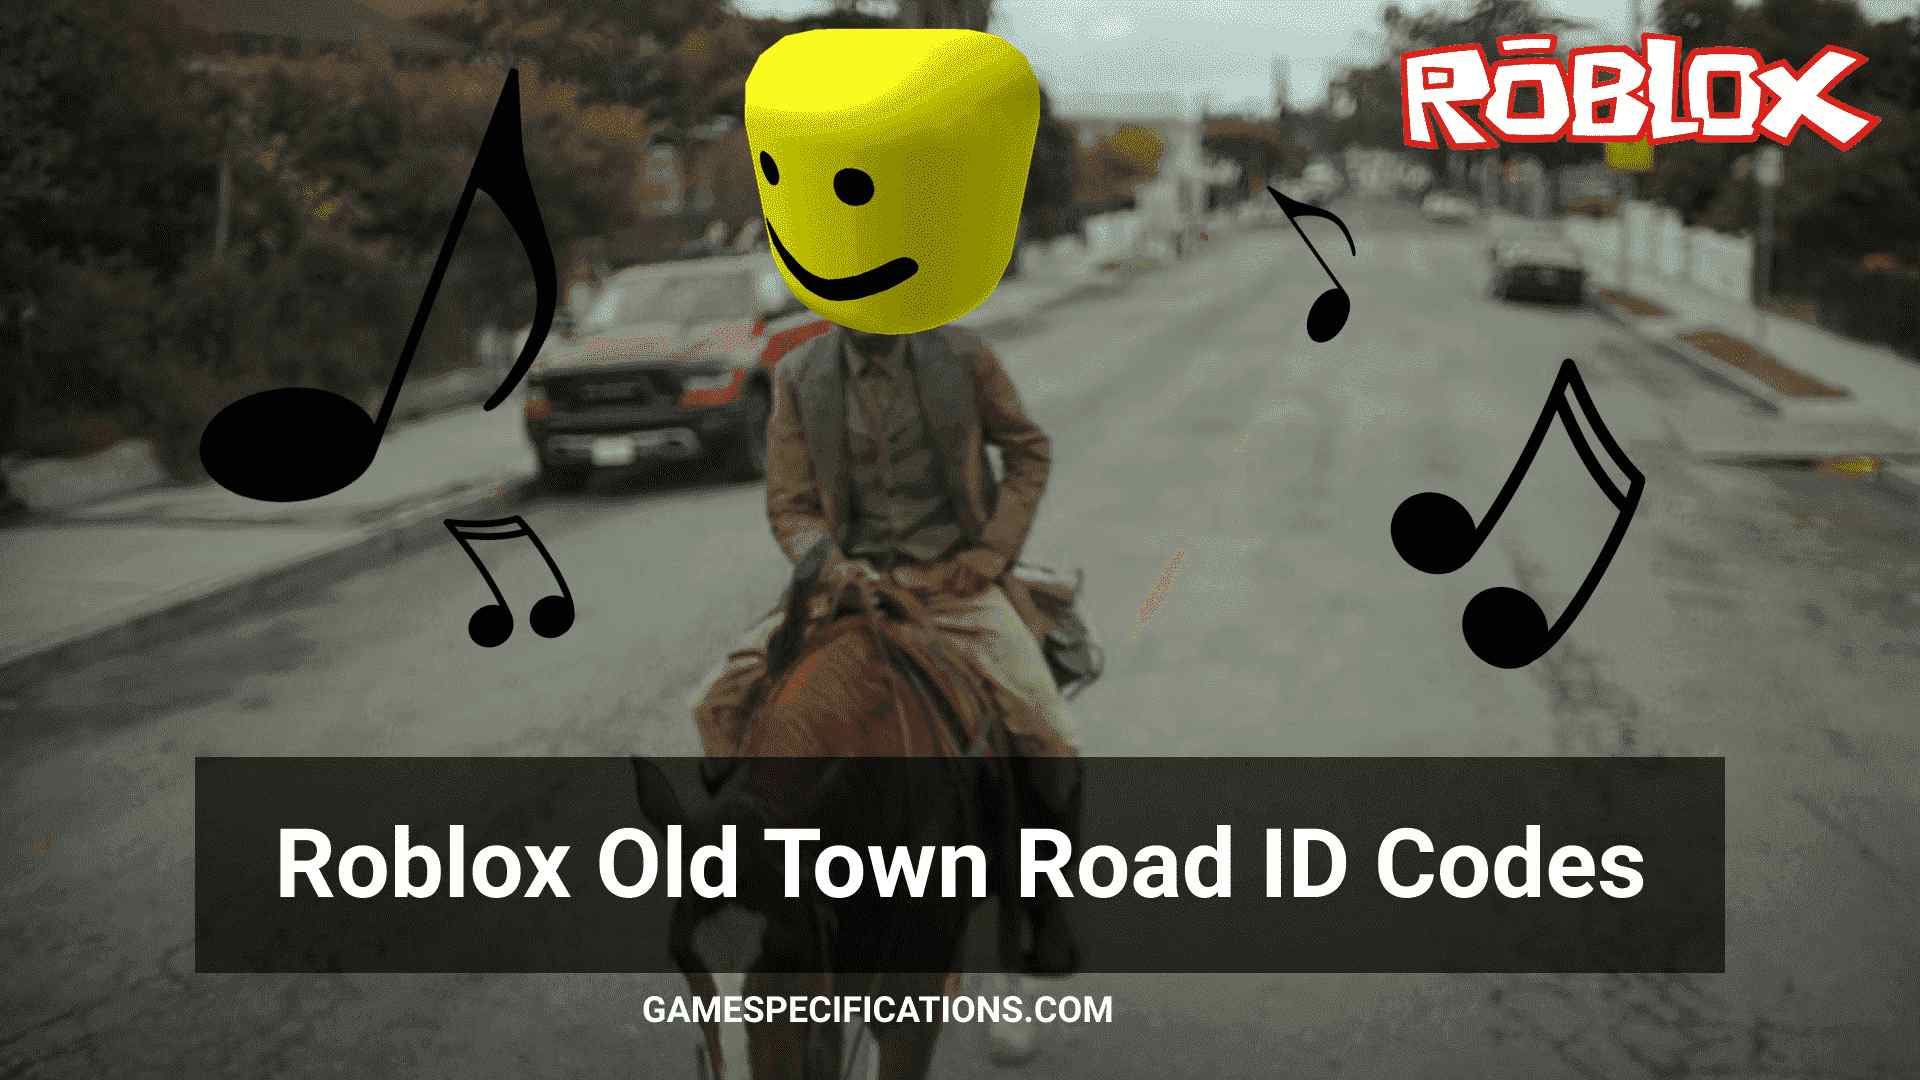 Ohtbreqjb6zwm - old town road roblox id full version